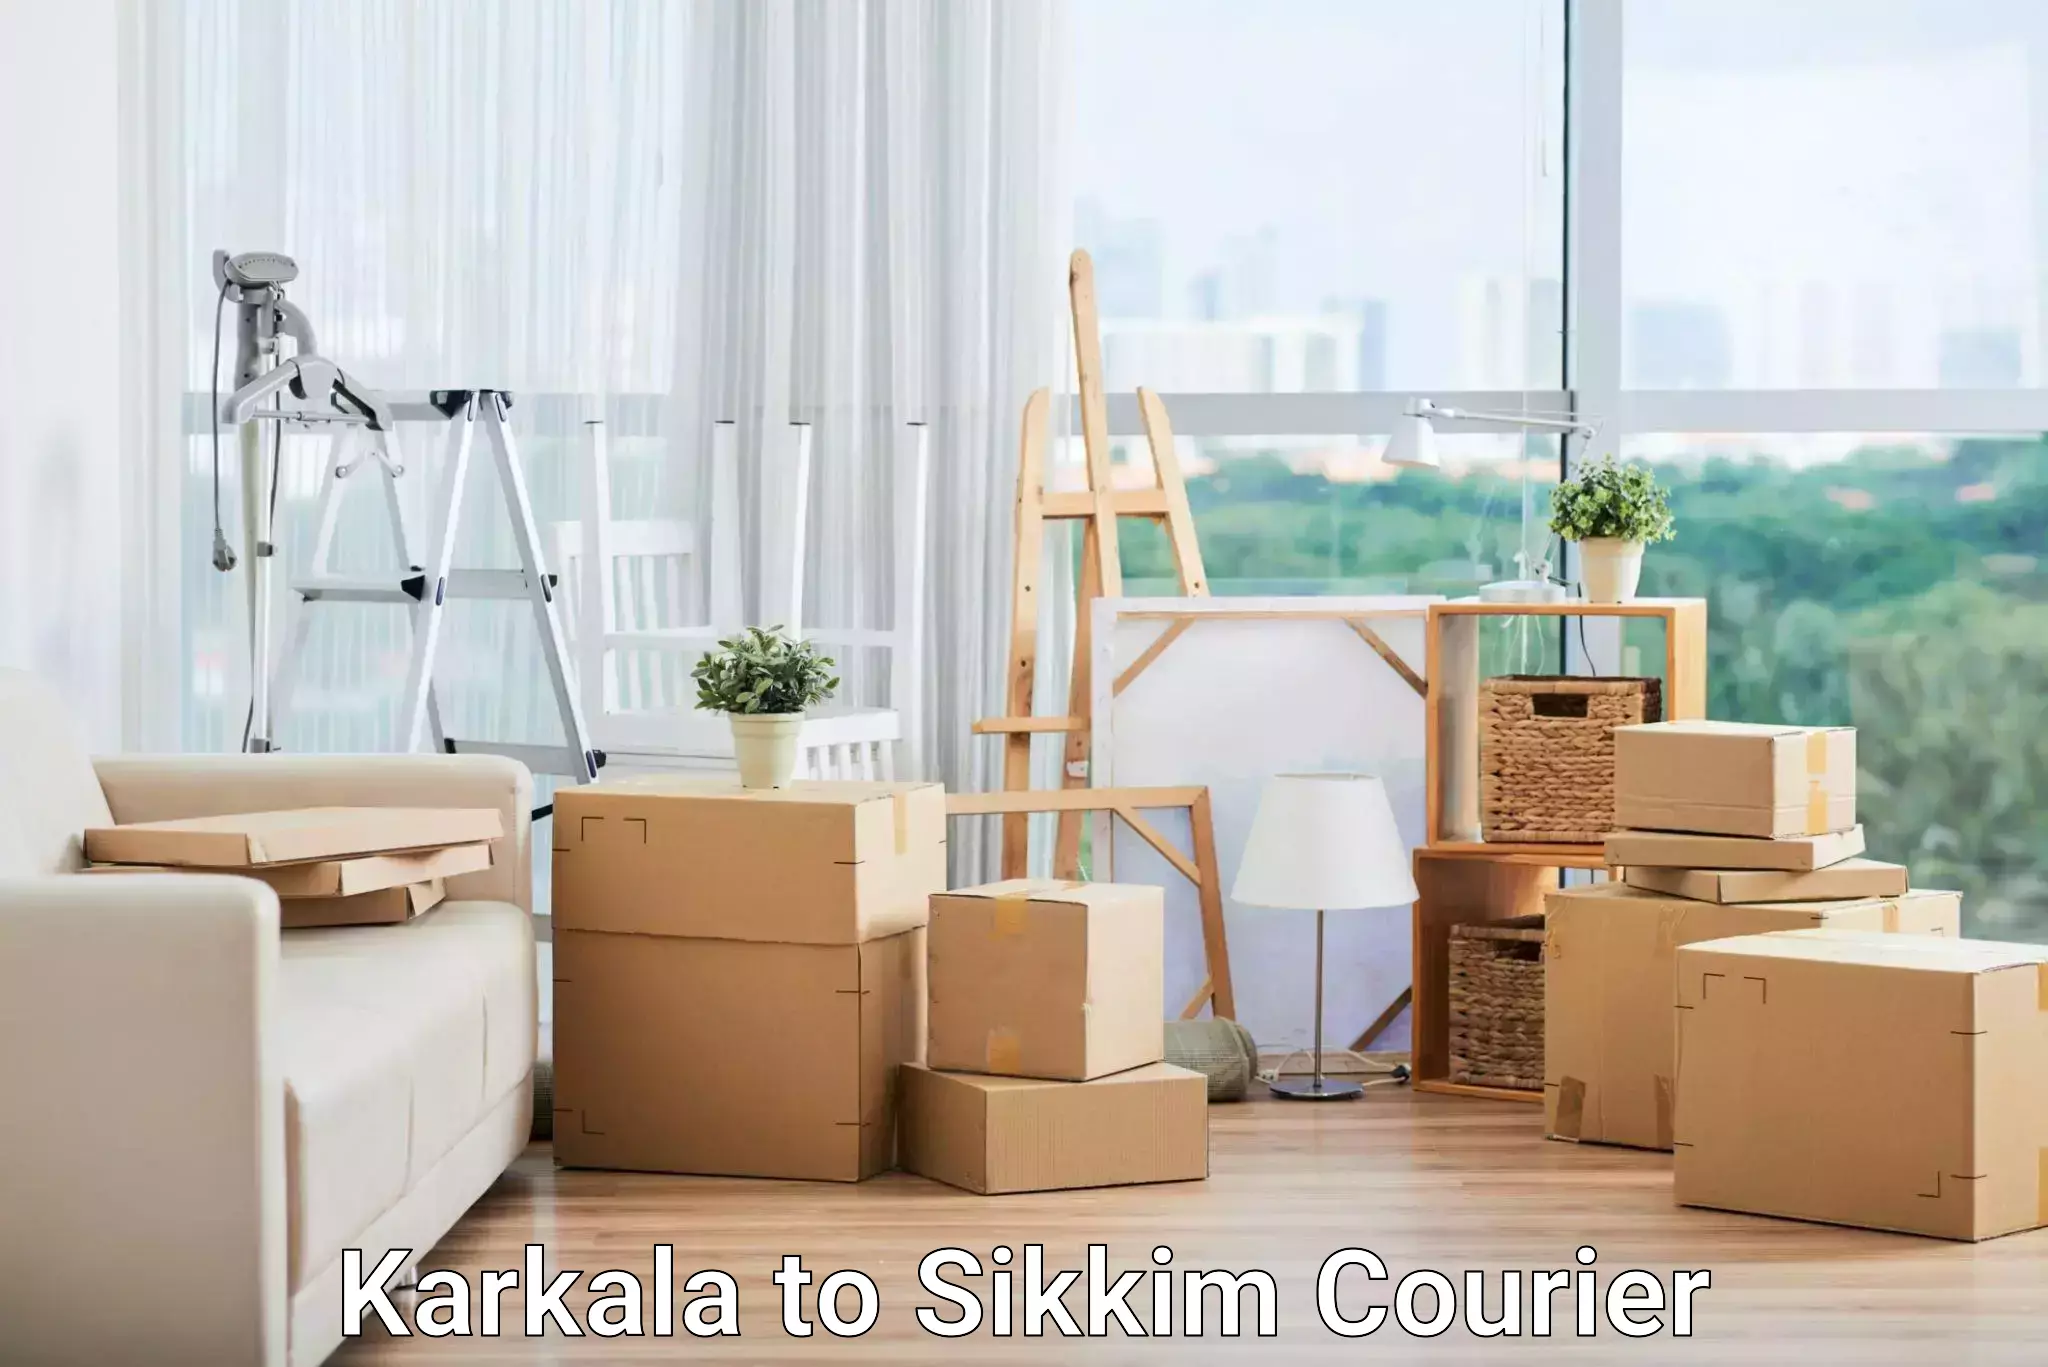 Reliable logistics providers Karkala to Geyzing